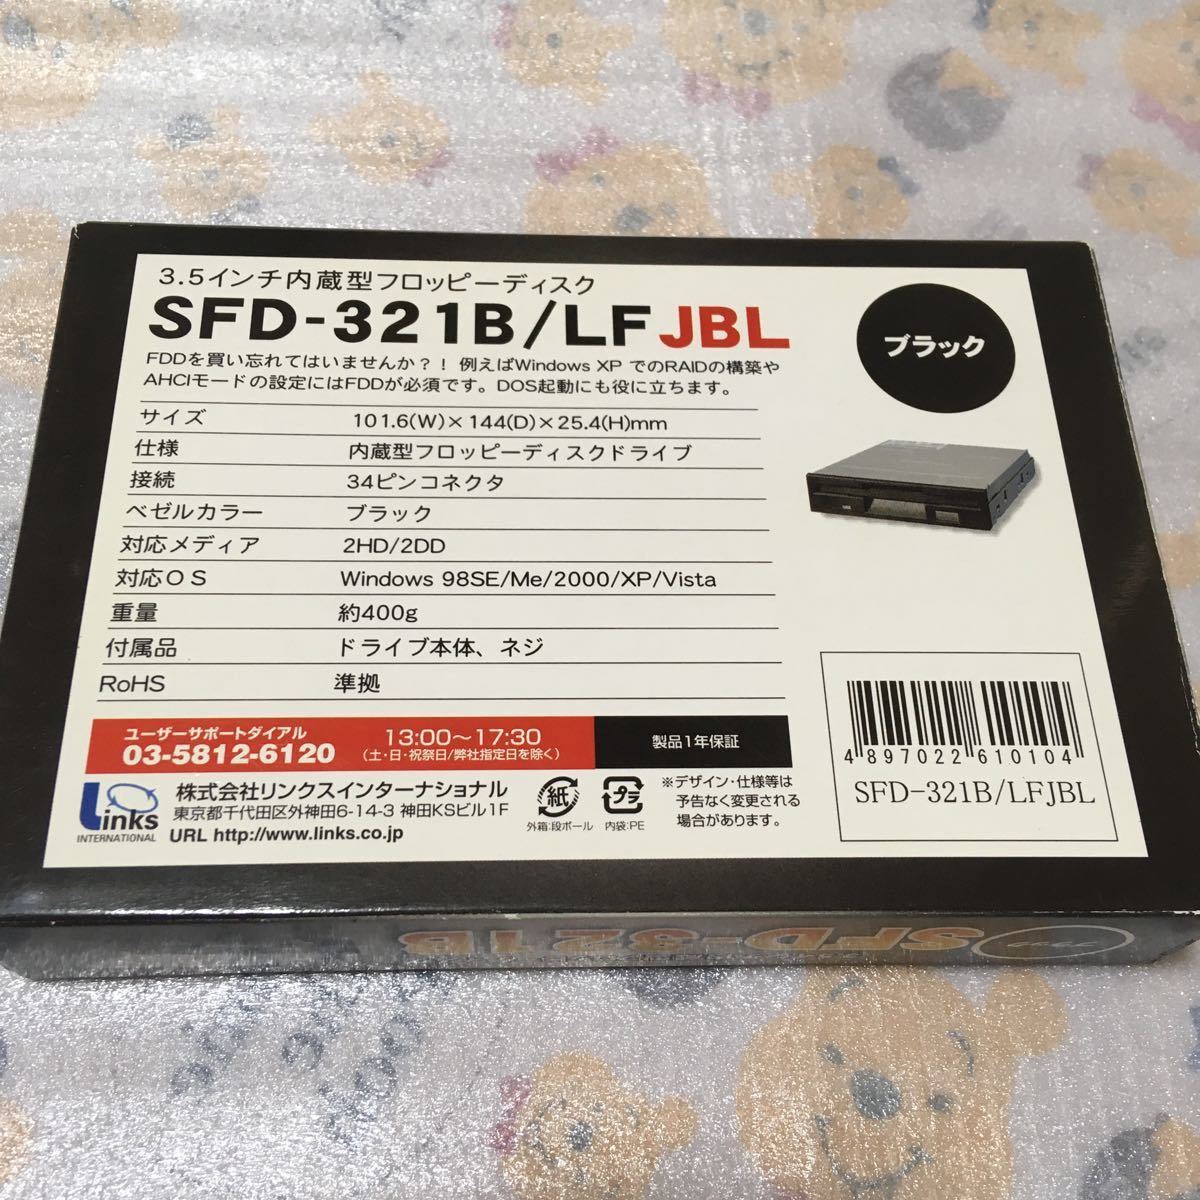 フロッピーディスクドライブ・SAMSUNG サムスン「SFD-321B」3.5インチ内蔵型